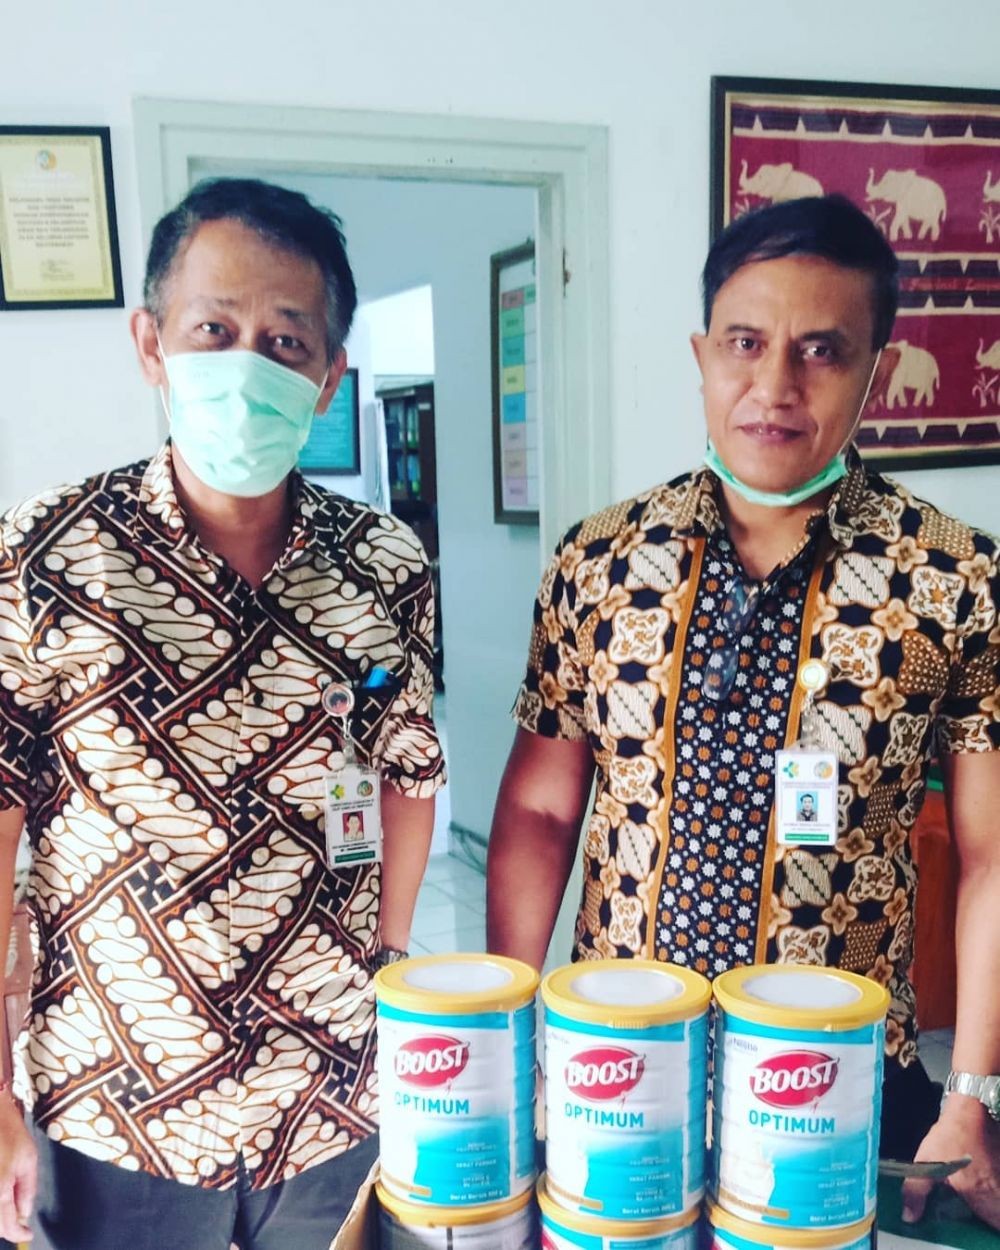 8 Bantuan Unik Masyarakat Bali Untuk Tenaga Kesehatan di RSUP Sanglah